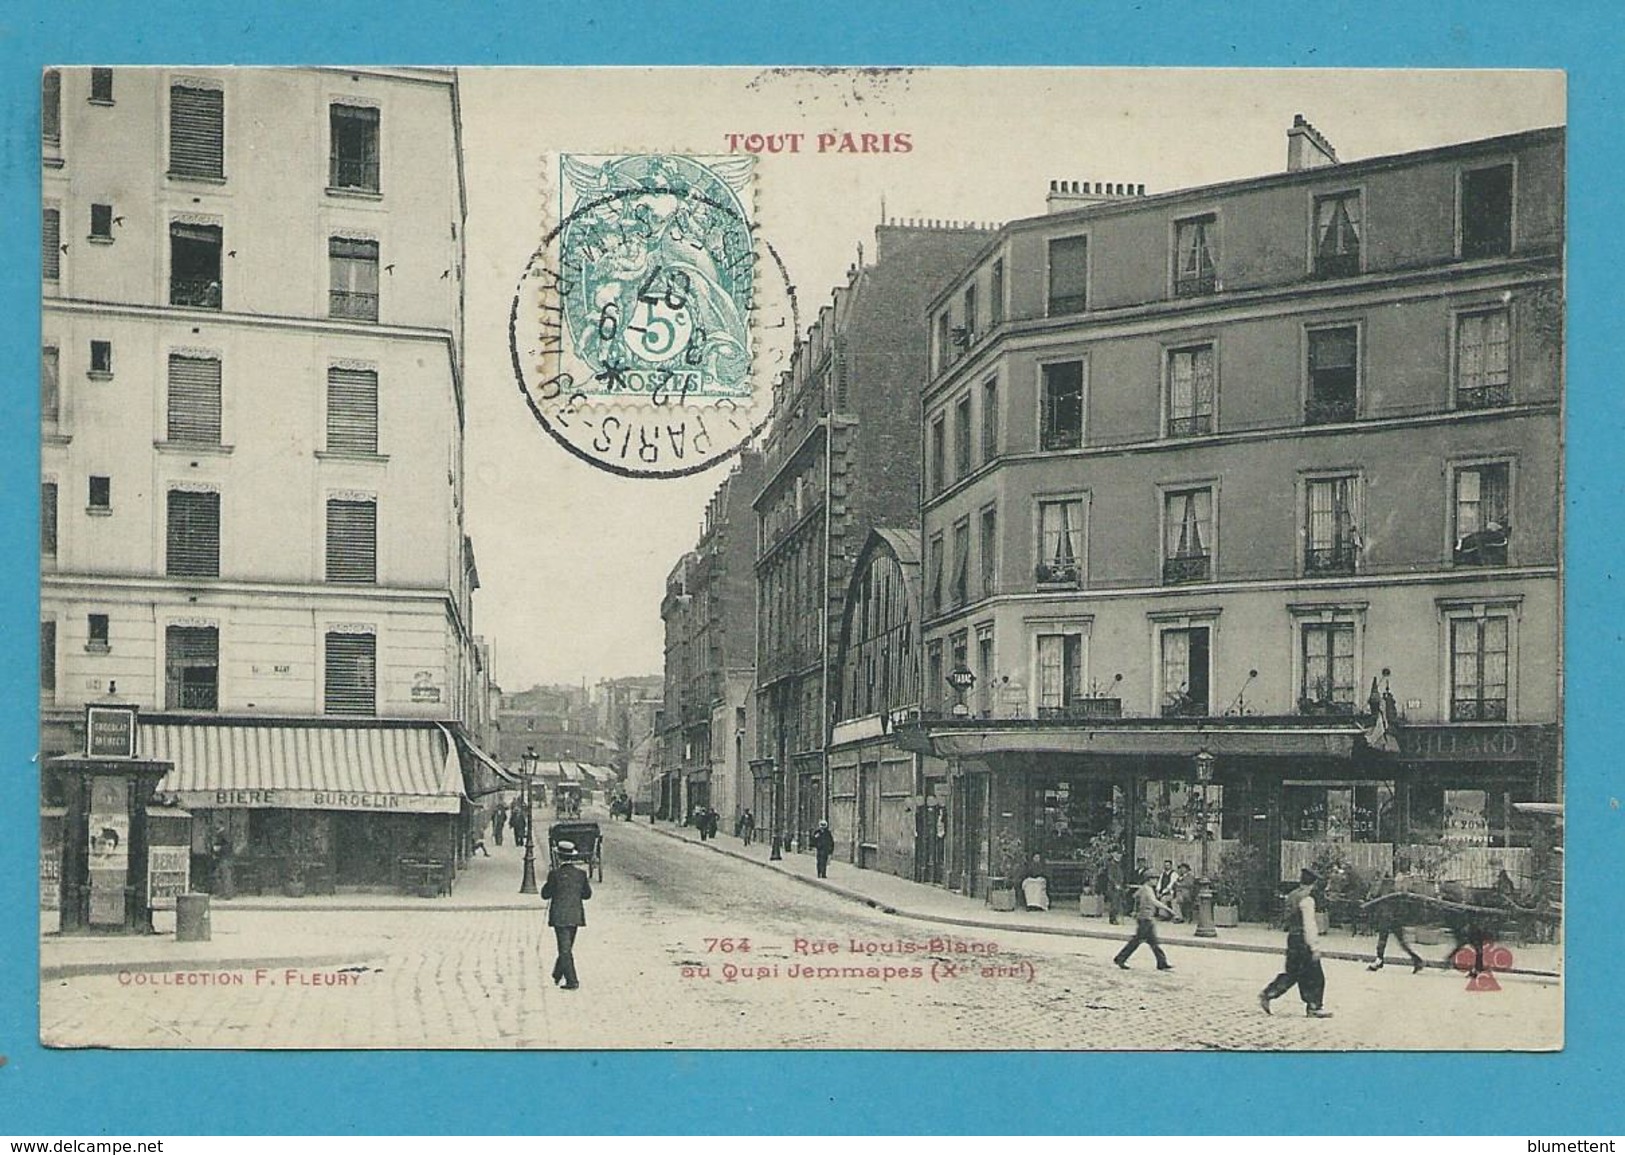 CPA TOUT PARIS 764 - Rue Louis-Blanc (Xème Arrt.) Edition FLEURY - Arrondissement: 10